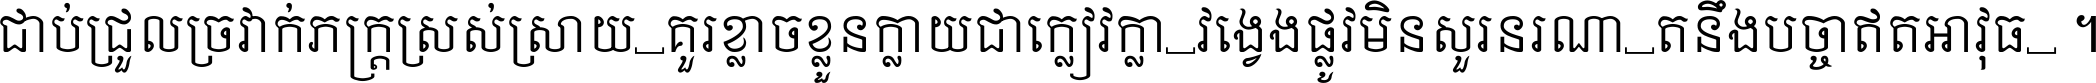 Khmer Mondulkiri-s xspace